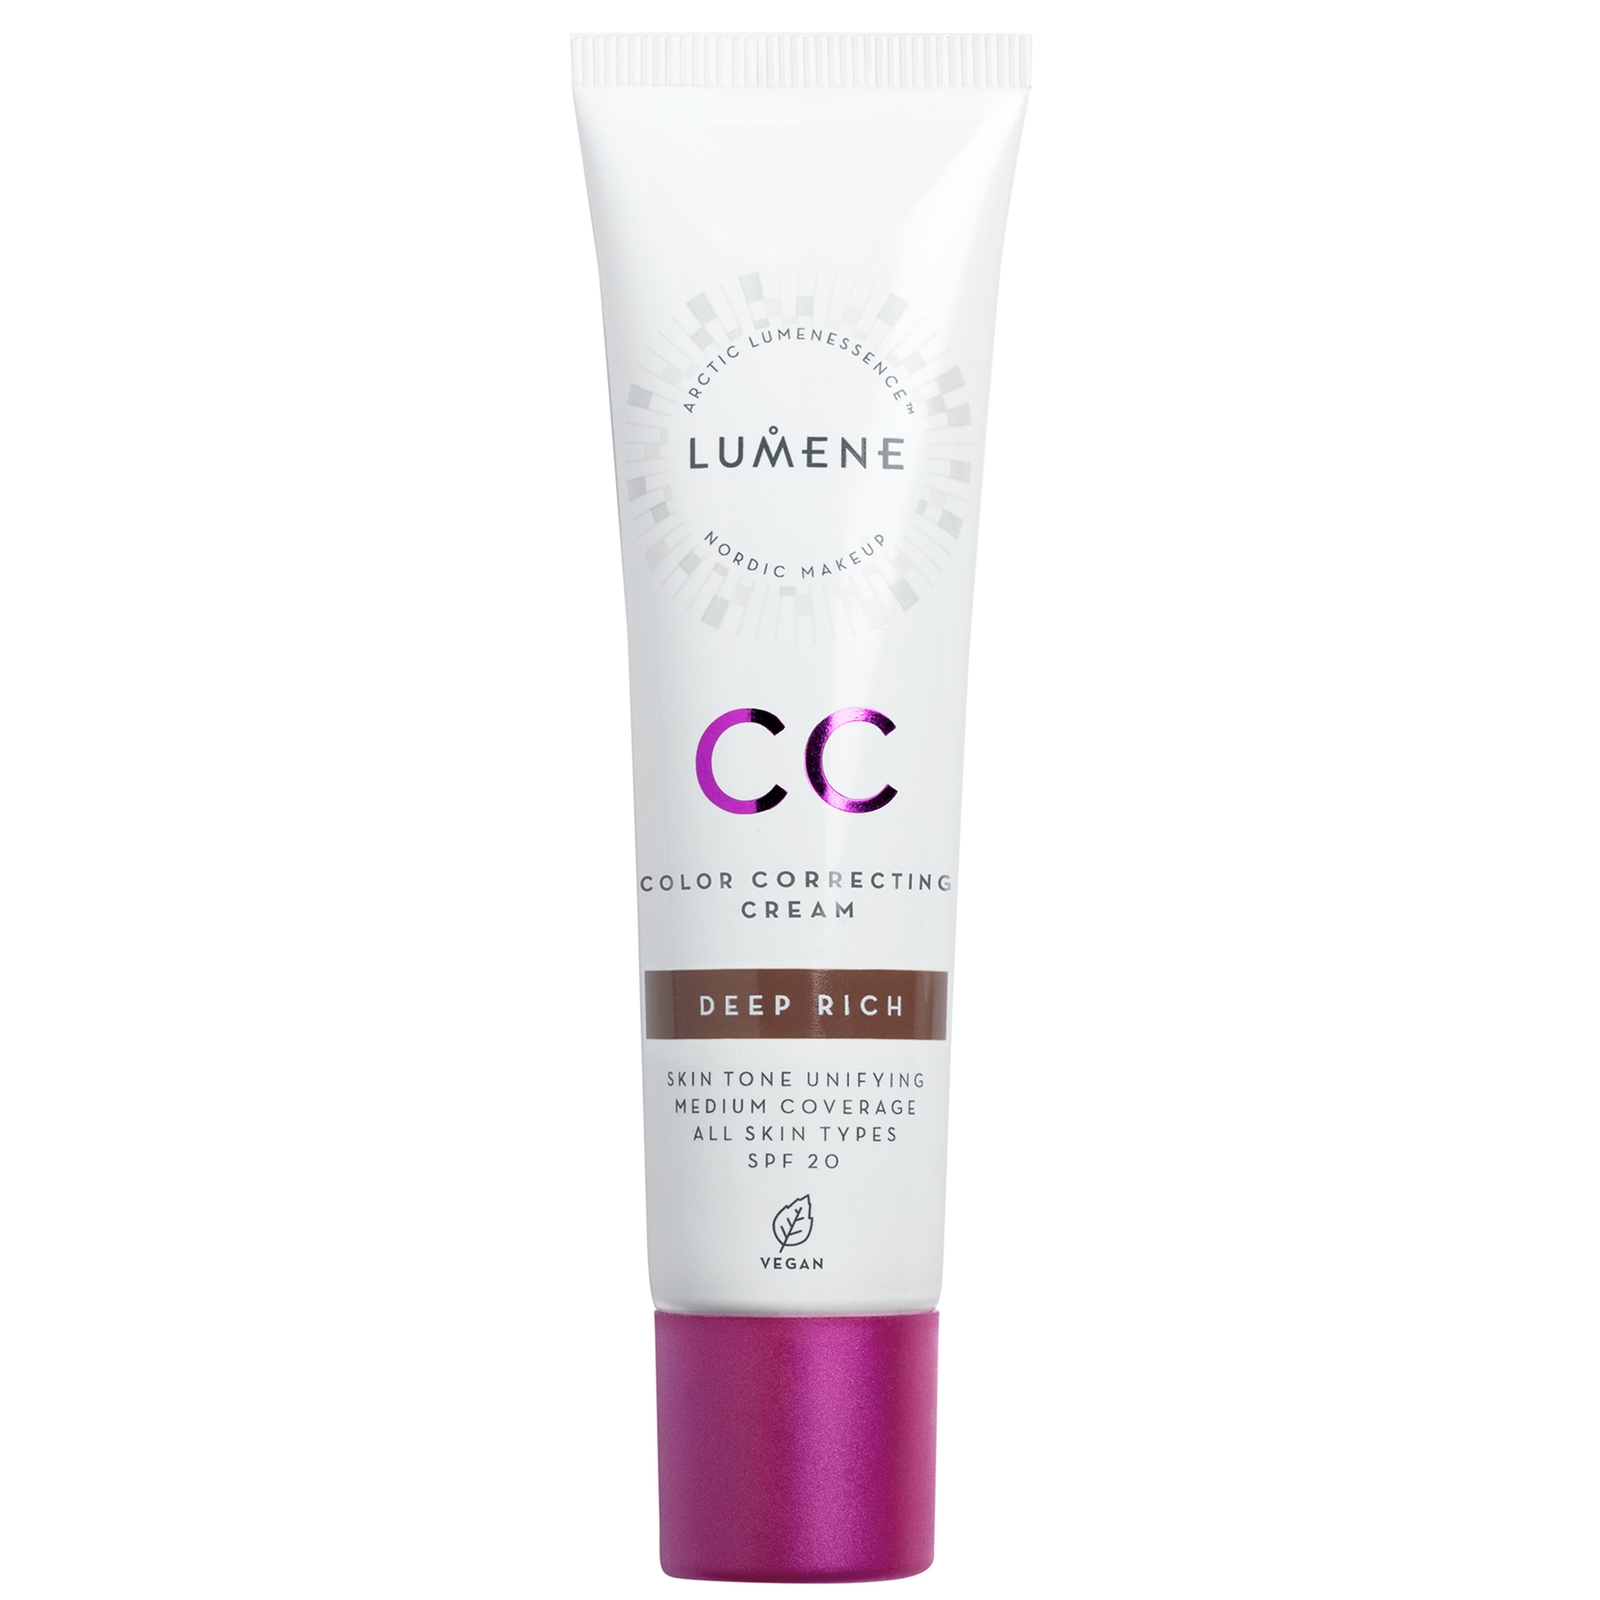 Lumene CC Colour Correcting Cream SPF20 30ml (Various Shades) - Deep Rich